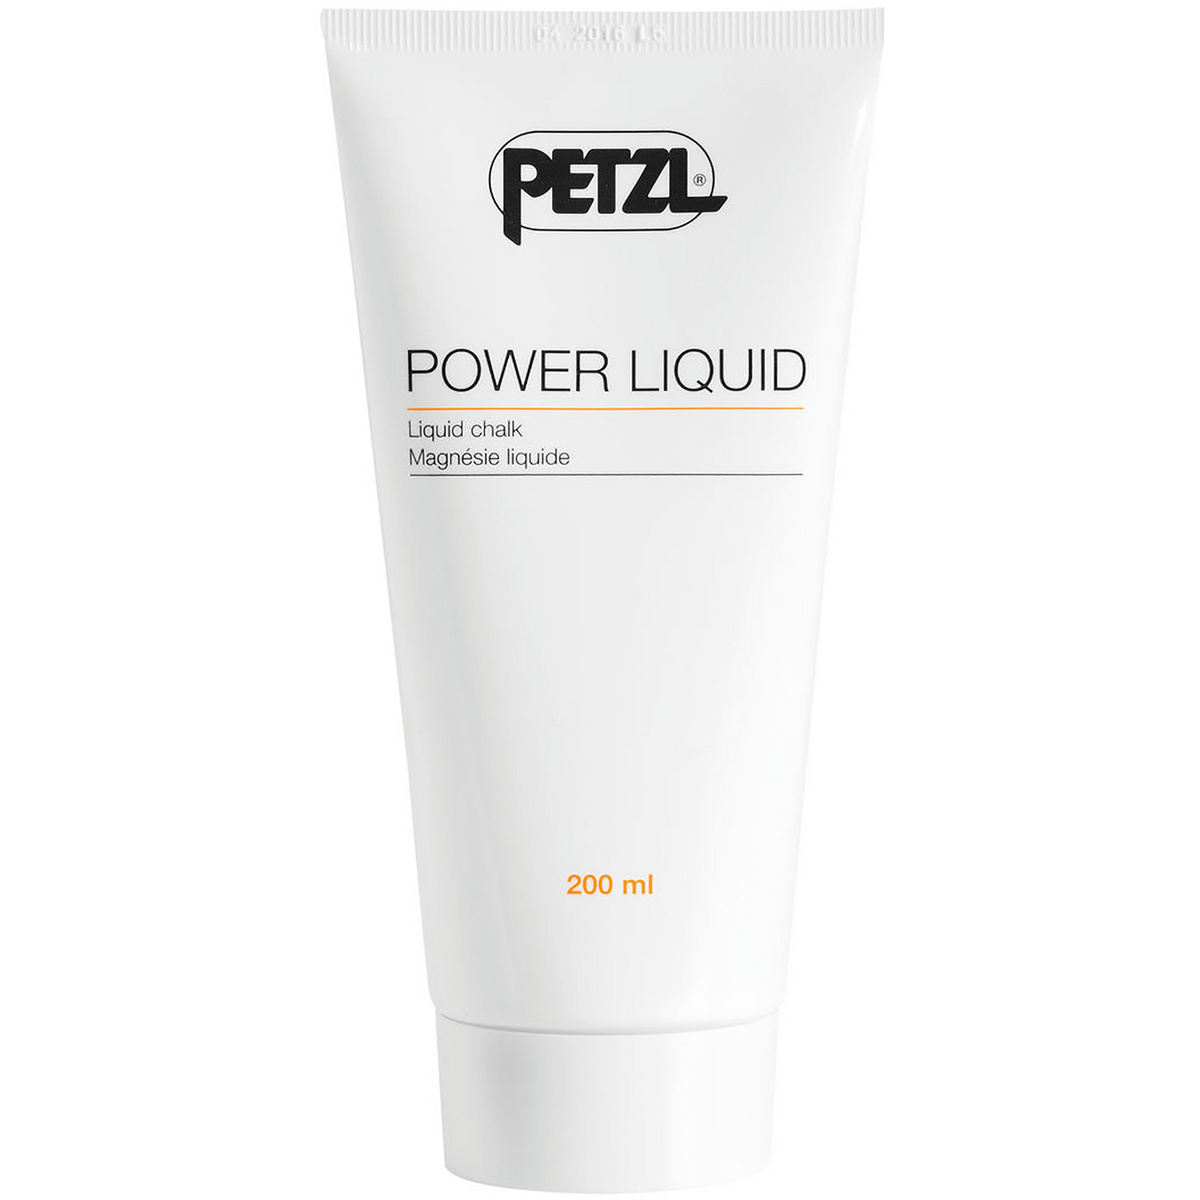 Image of Petzl Magnesite liquida Power